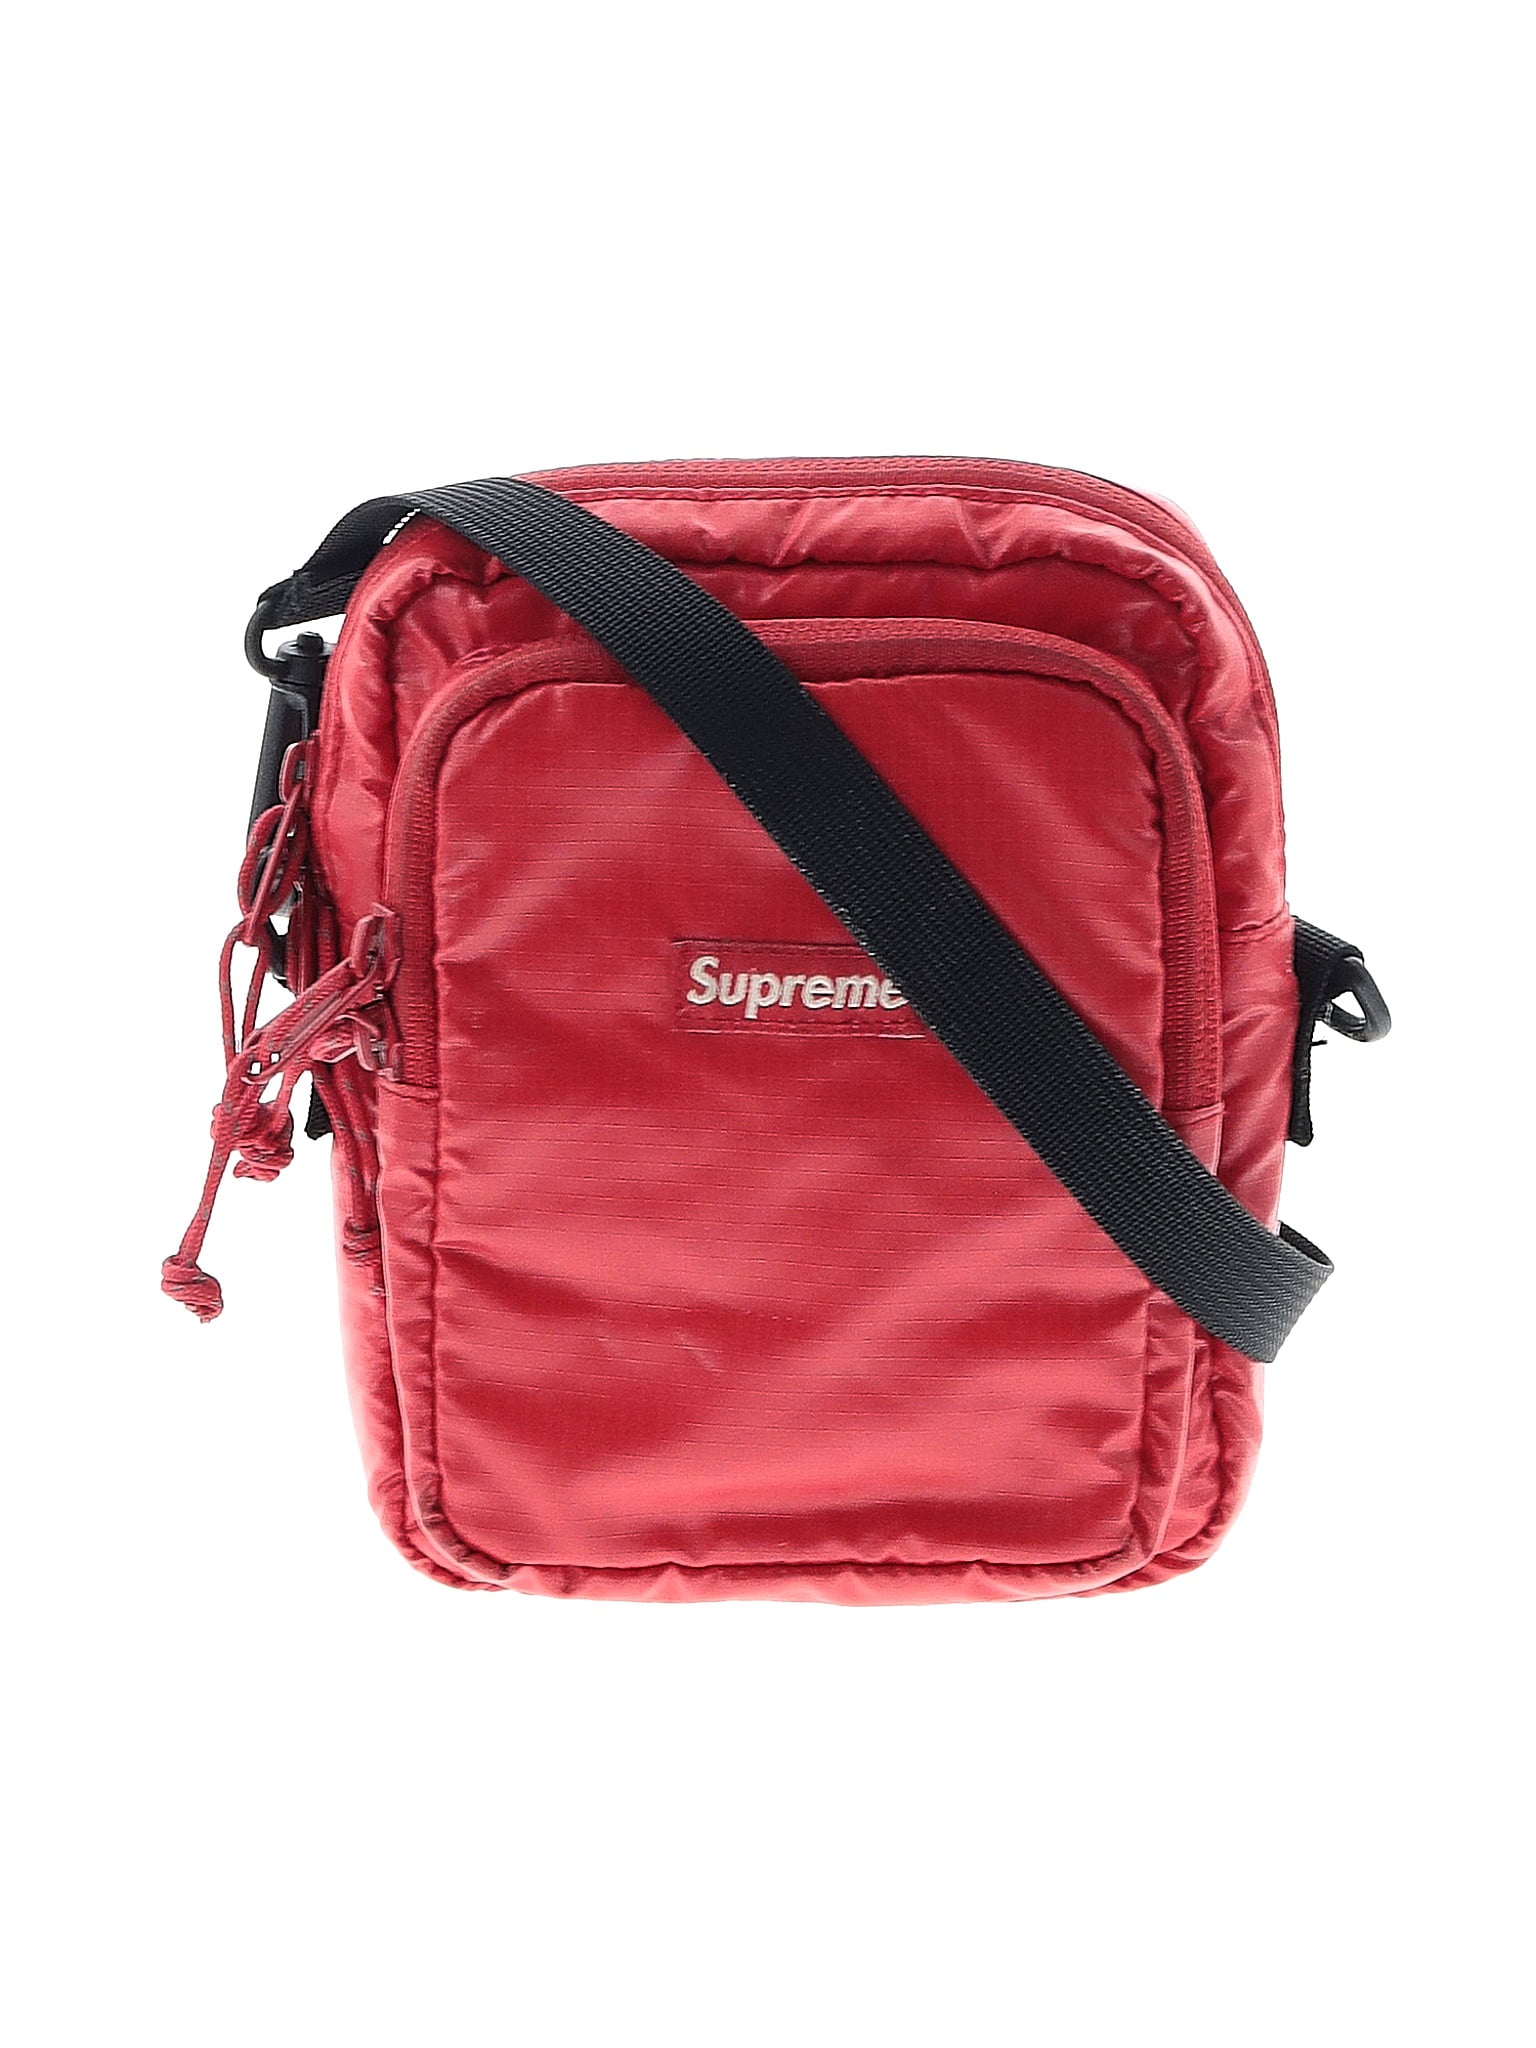 Supreme, Bags, Supreme Shoulder Bag Red